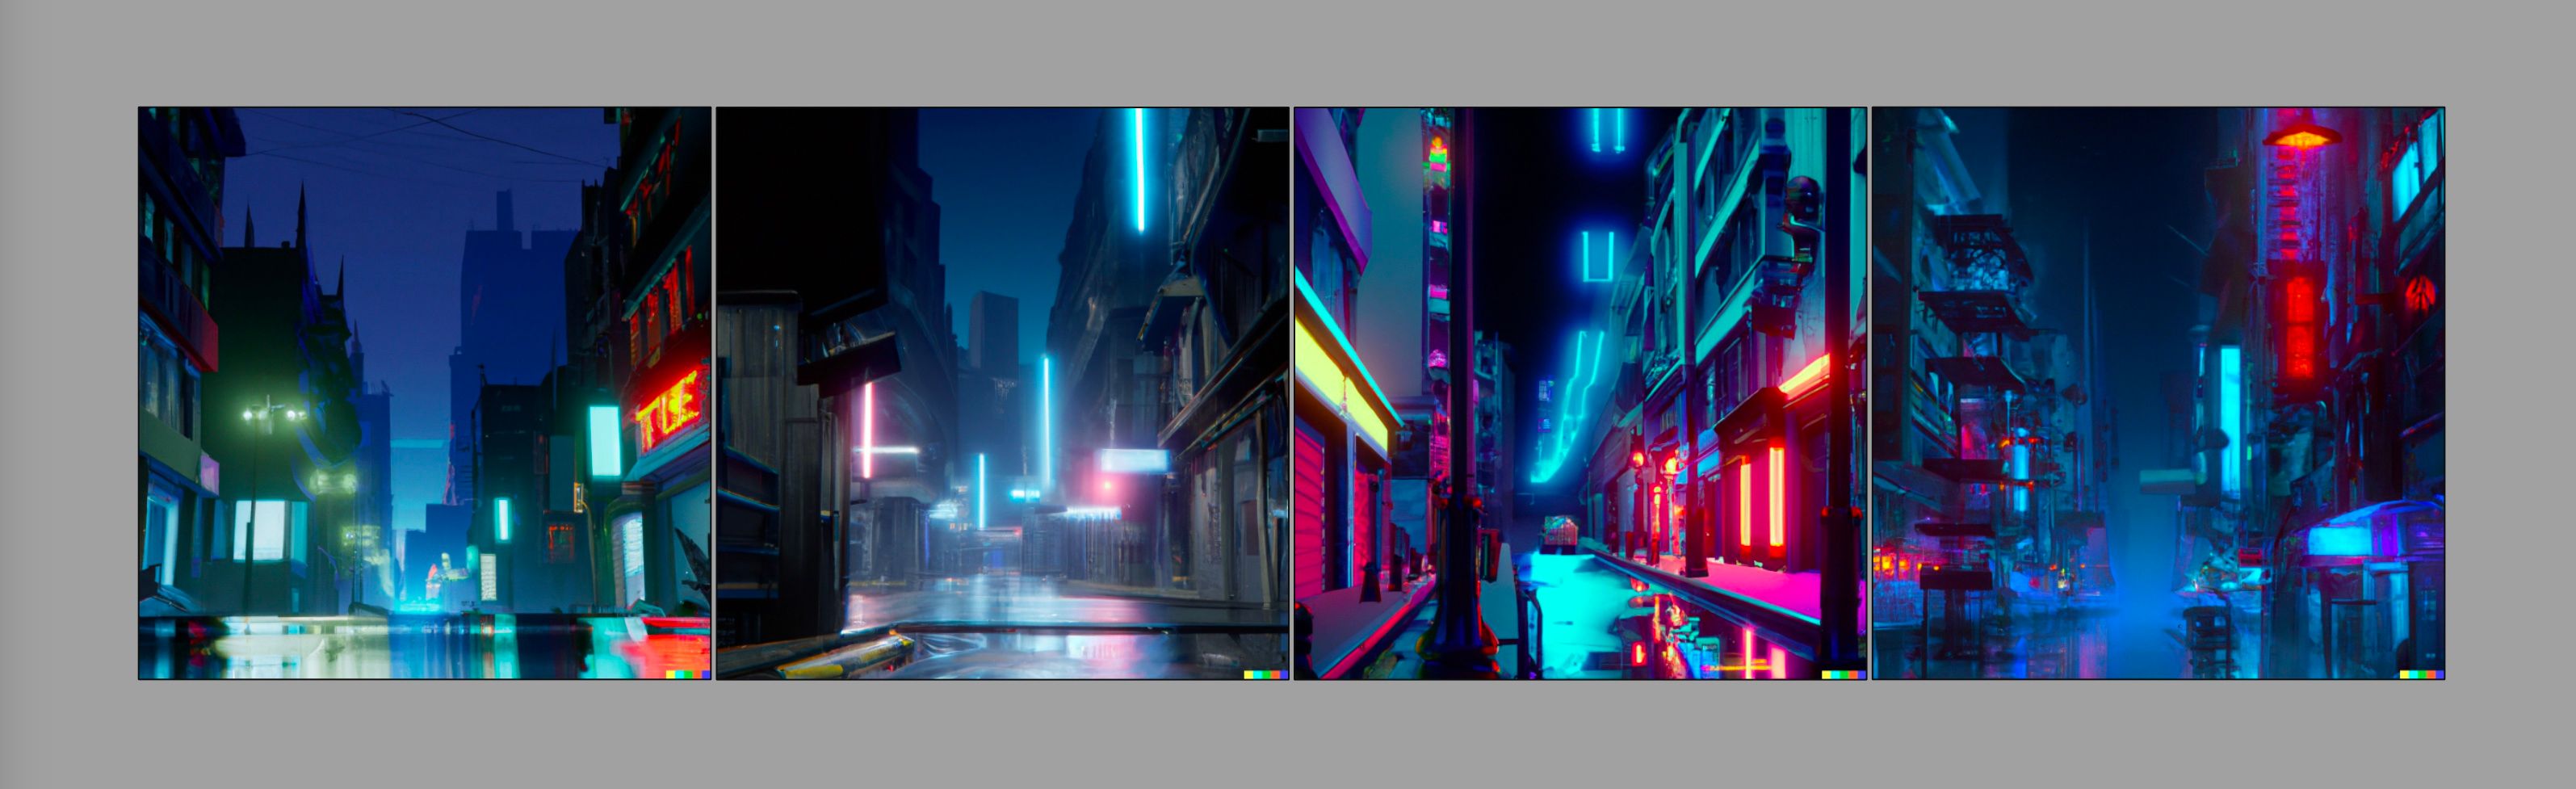 Quatro imagens de uma rua de uma cidade em estilo cyberpunk, geradas com Dall-E